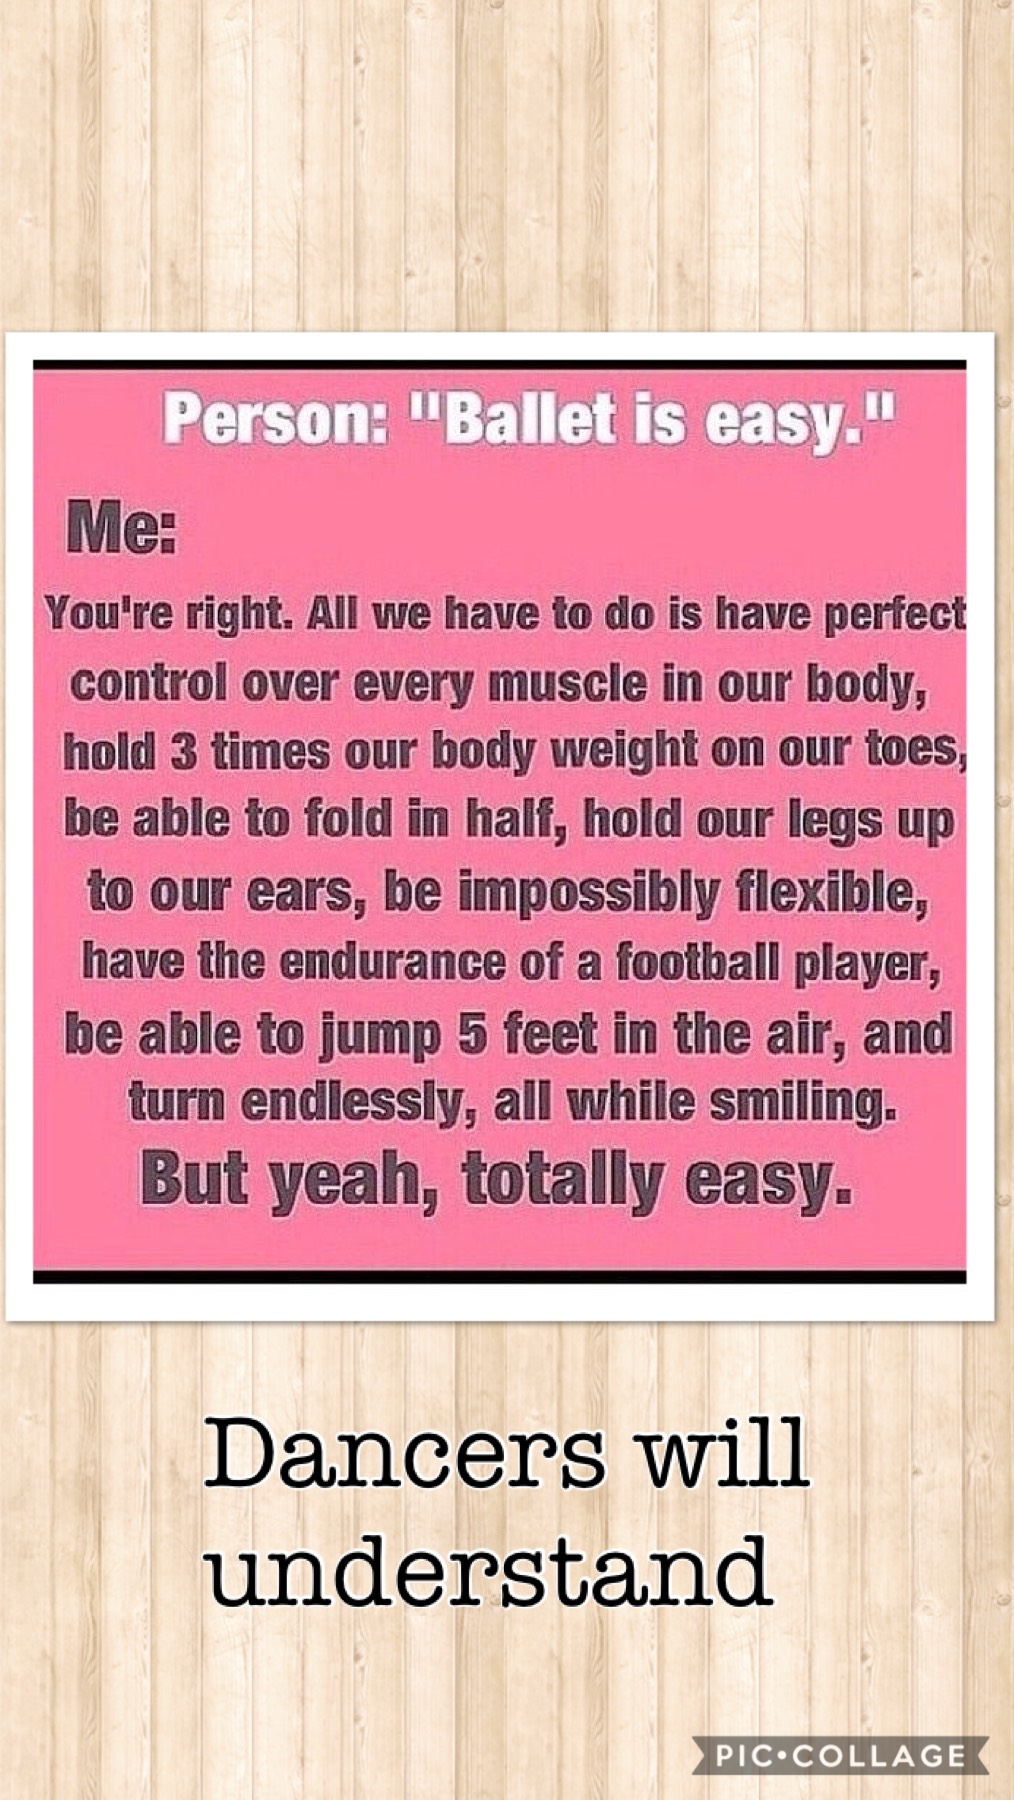 Dancers will understand 😂